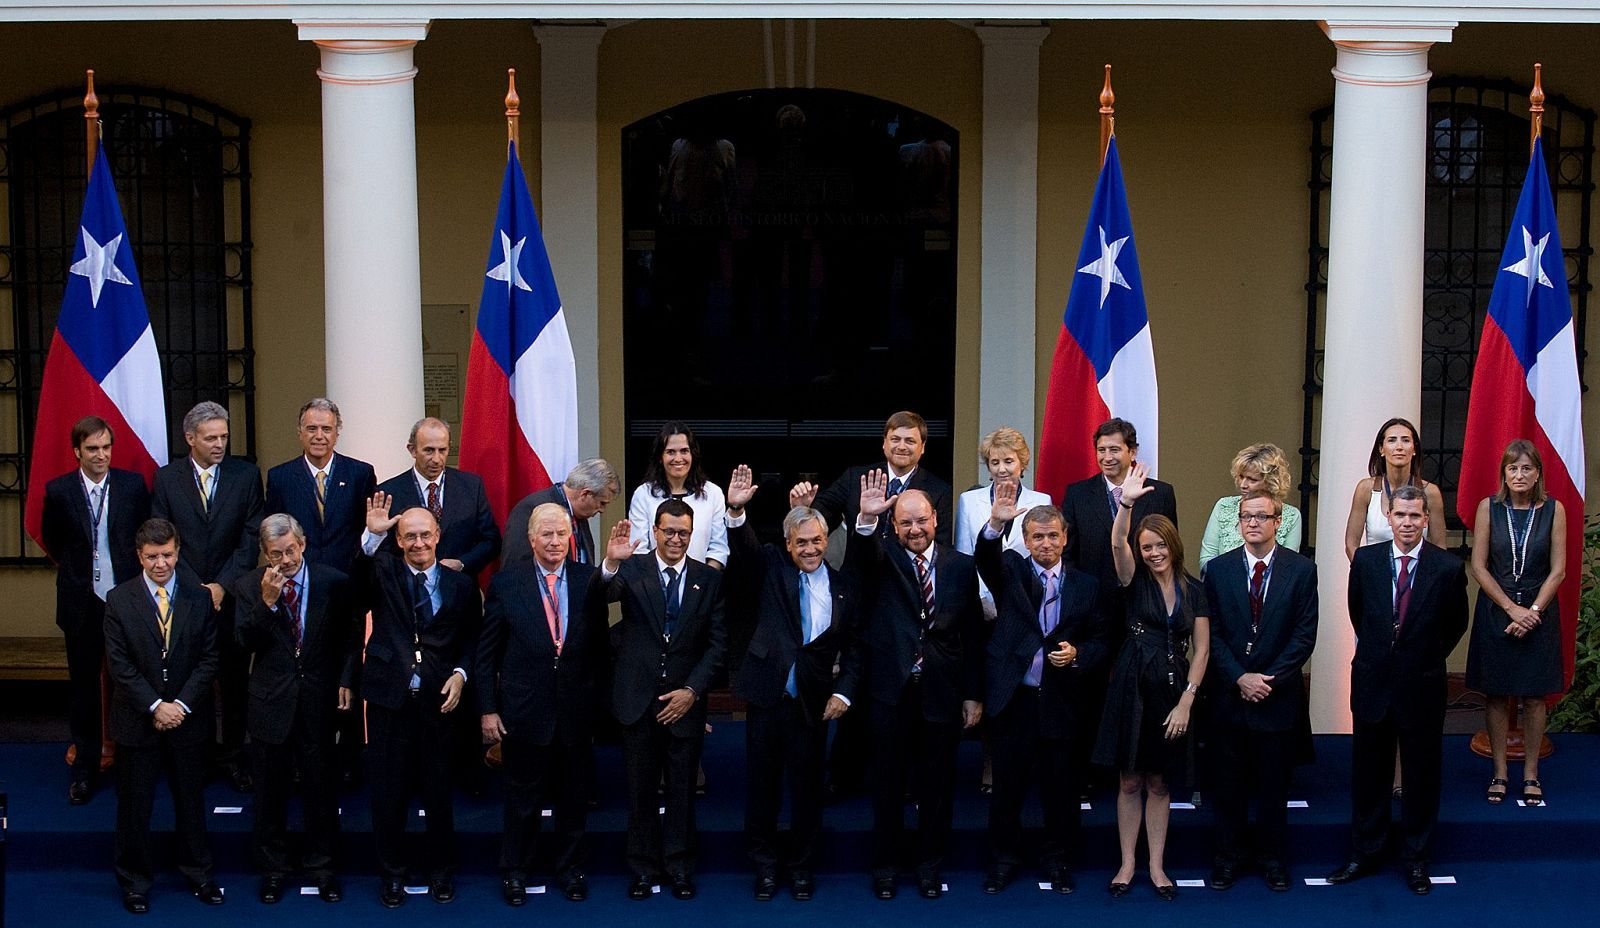 Piñera, en el centro, saluda junto a su nuevo gabinete.